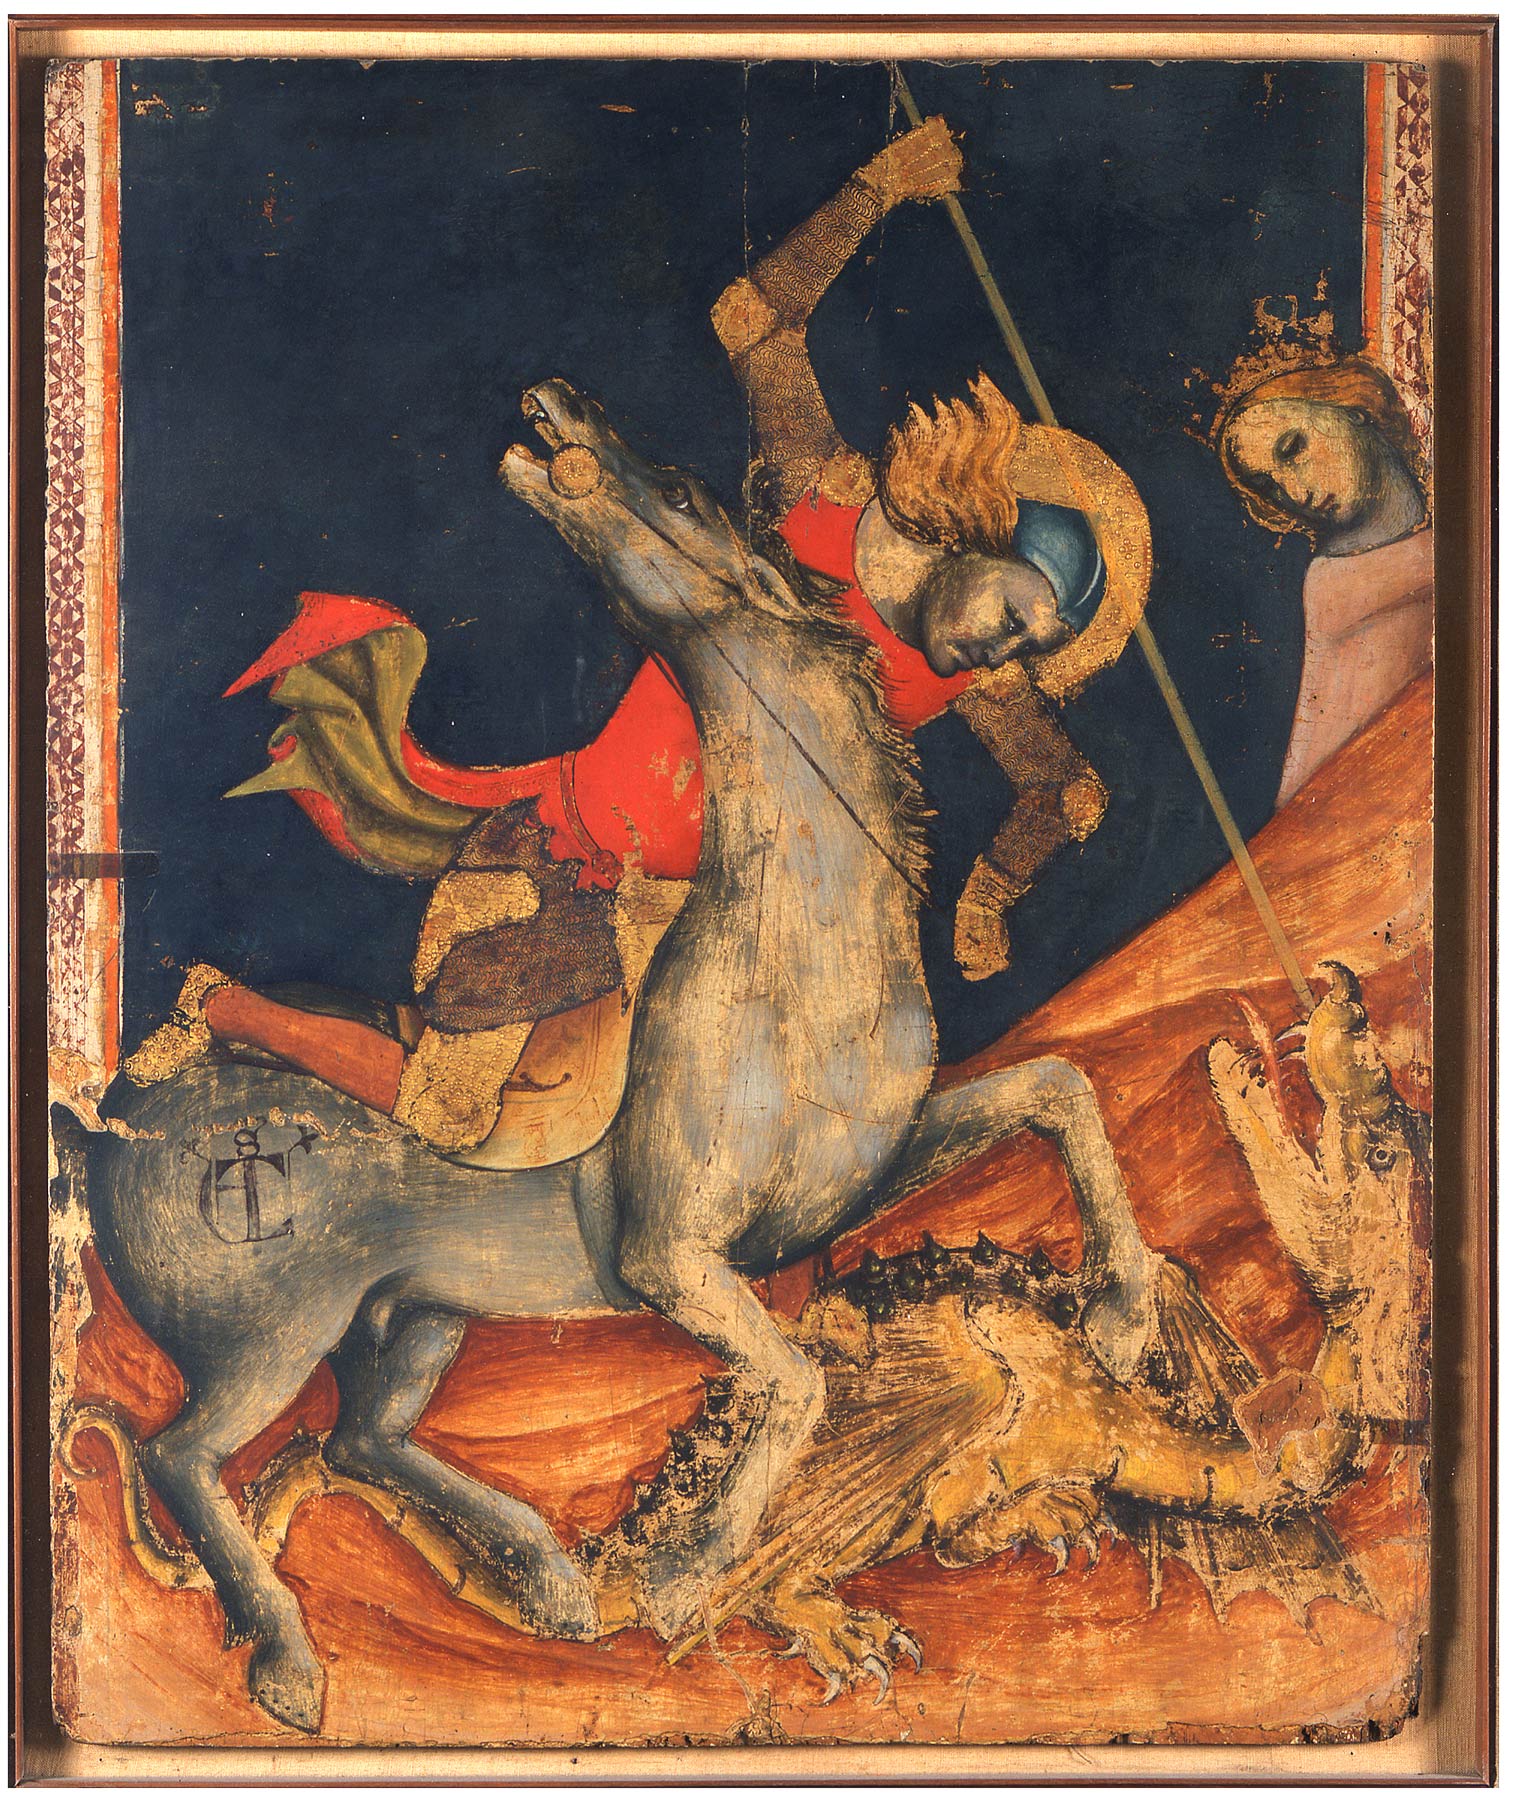 Vitale da Bologna, San Giorgio e il drago (1330-1335 circa; tempera su tavola, 86 x 70,5 cm; Bologna, Pinacoteca Nazionale)